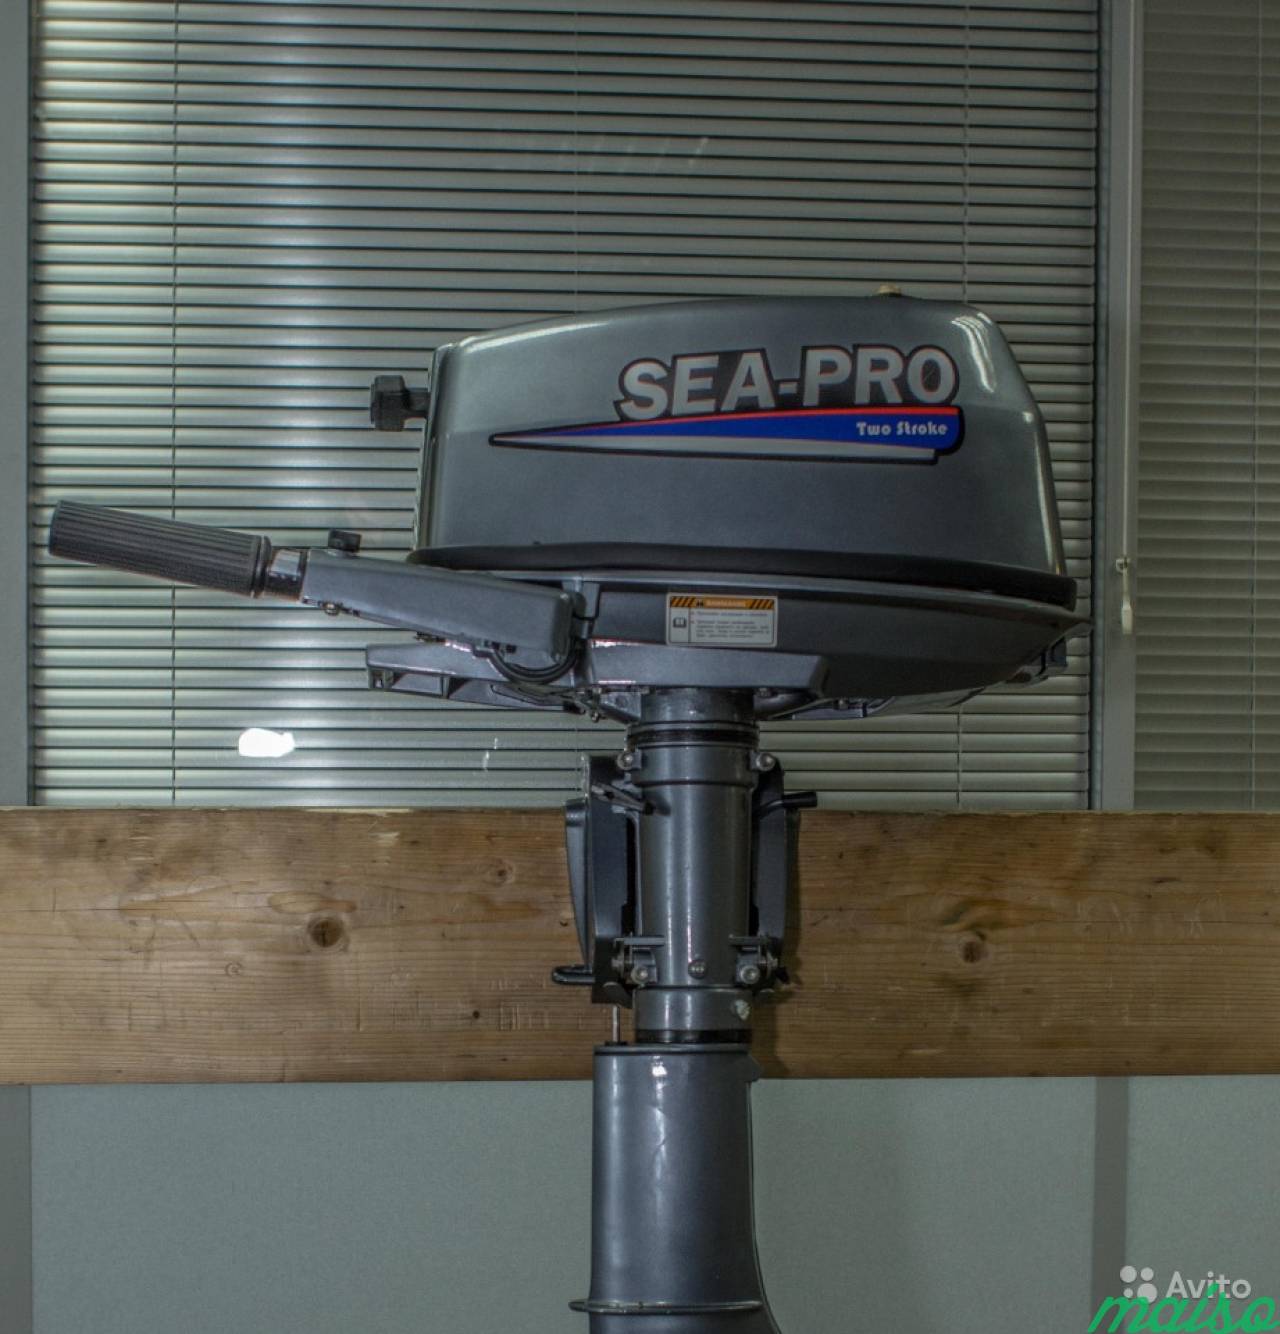 Лодка Sea Pro, 200. Sea Pro 2.5. Новинки лодочных моторов 2020. Sea Pro 5. Куплю плм б у